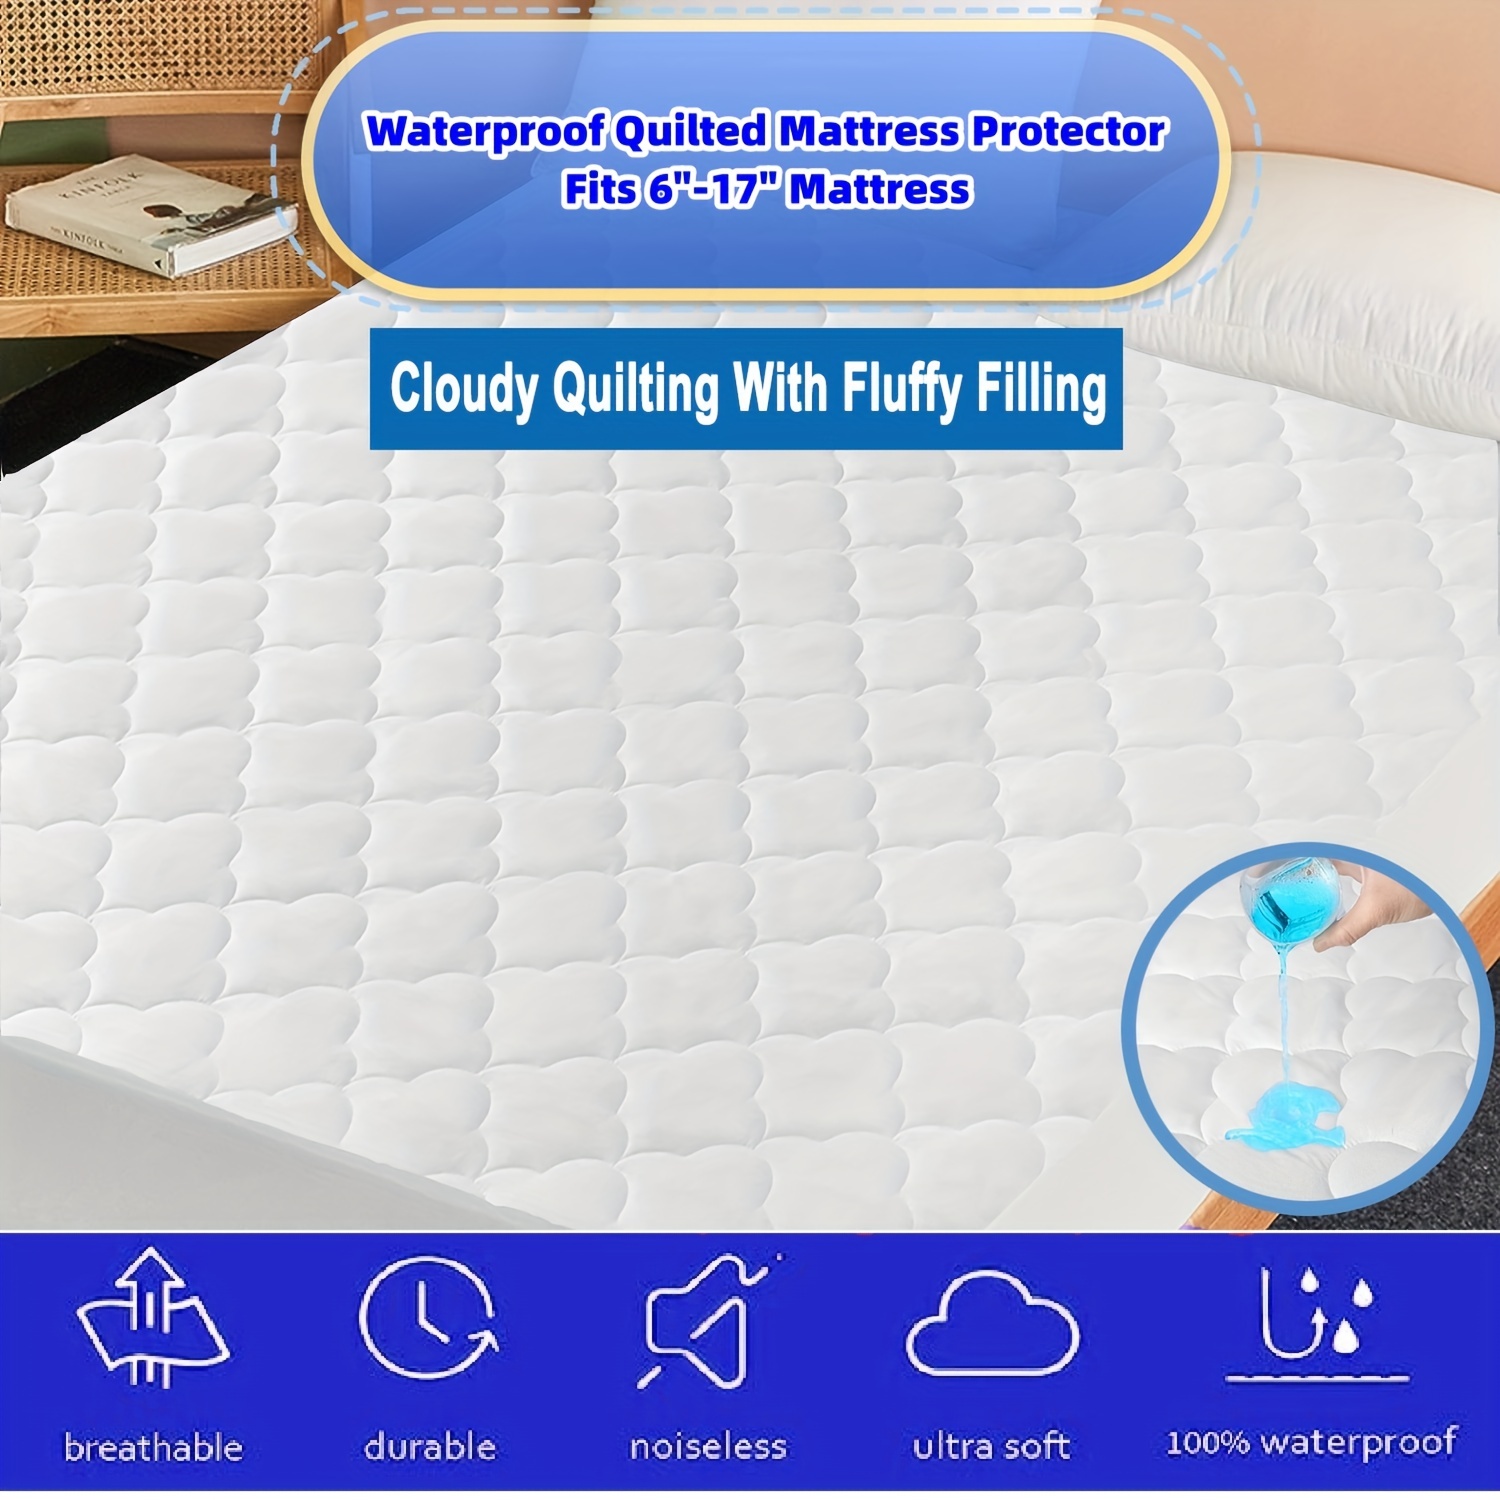 Protector para colchón tamaño individual con acolchado impermeable,  protector de colchón suave para cama tamaño Individual, funda de colchón  ajustable